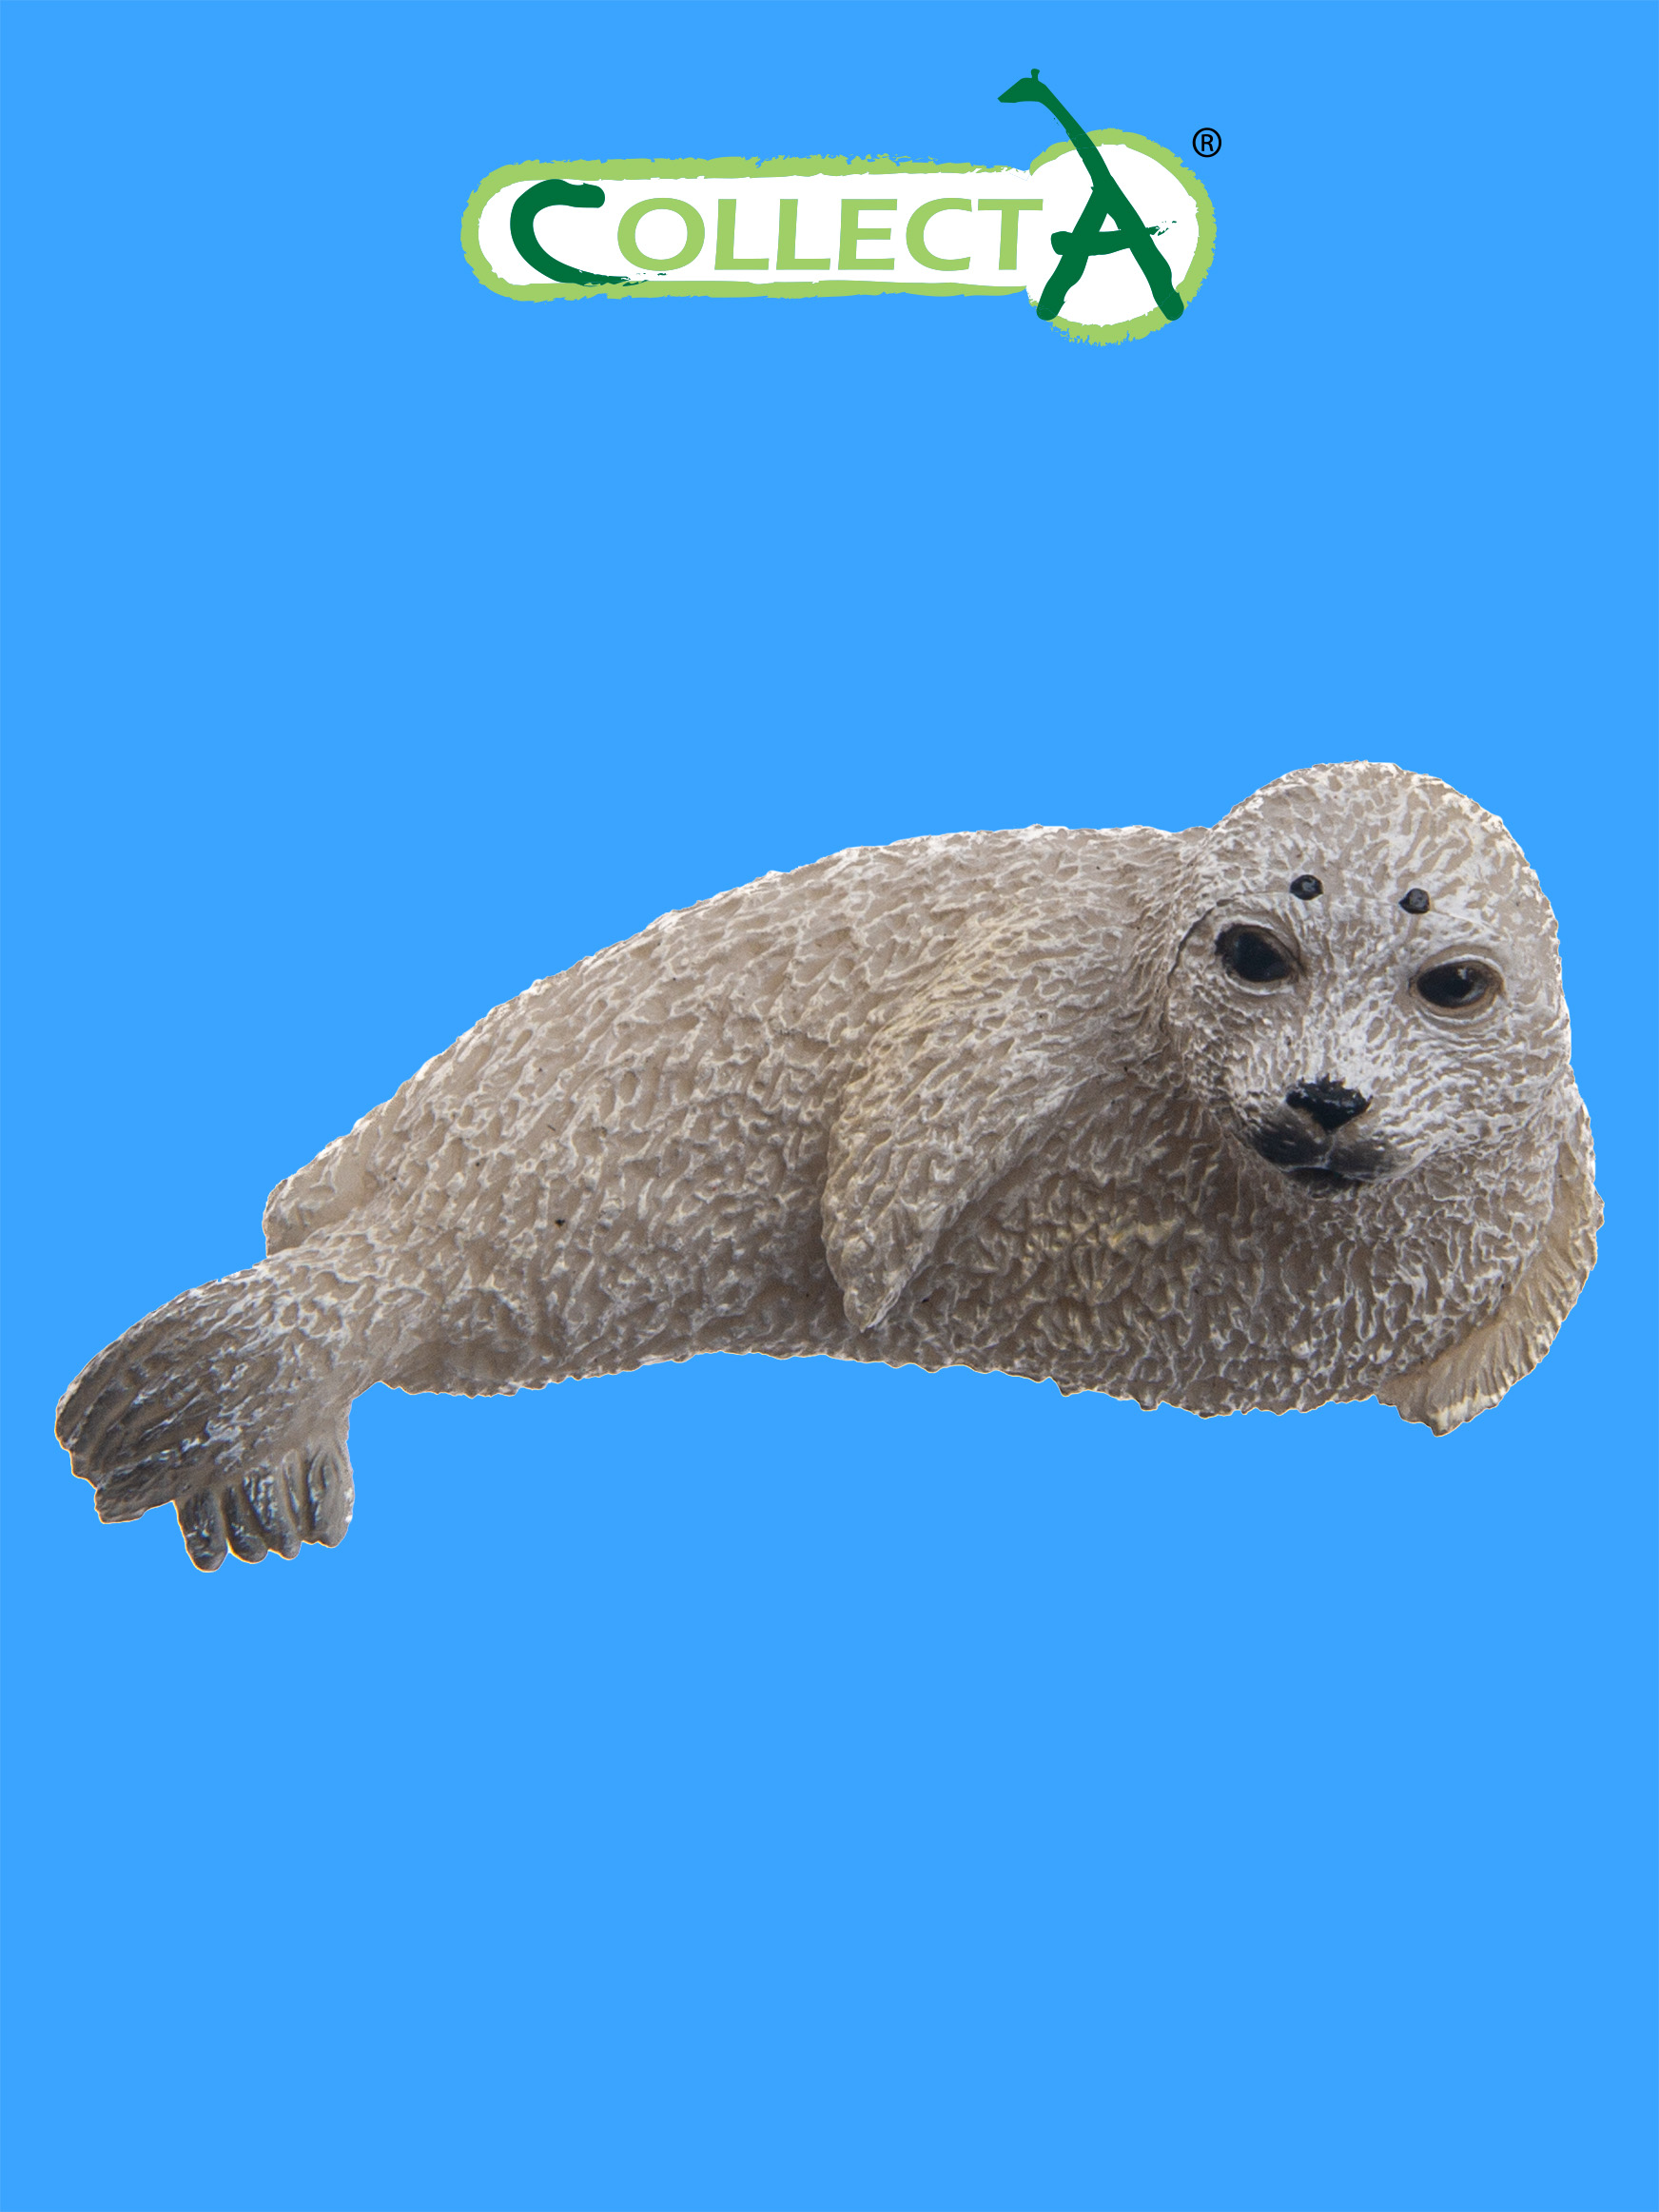 Игрушка Collecta Детёныш пятнистого тюленя фигурка животного - фото 1